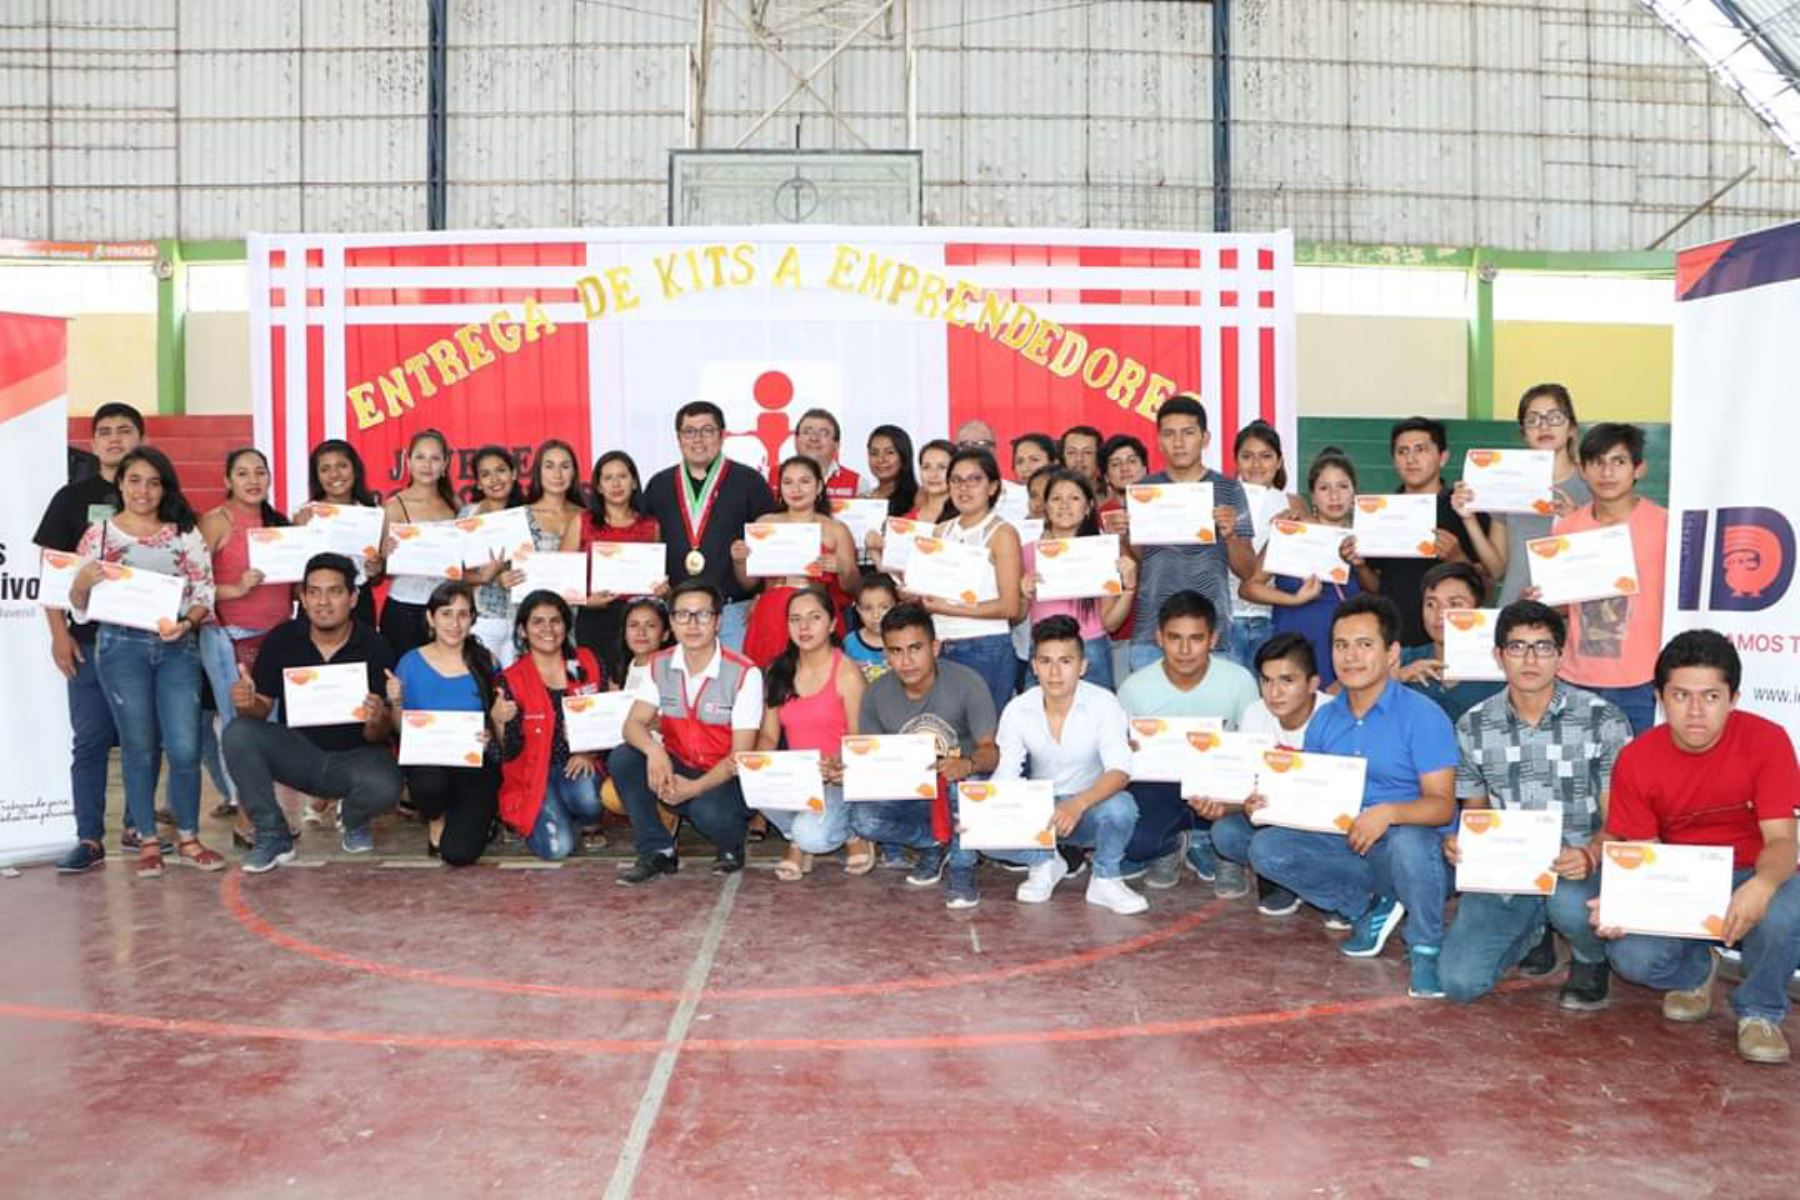 Cincuenta jóvenes de Cajamarca ganaron concurso Yo Trabajo Emprendiendo y recibieron el kit emprendedor otorgado por el programa Jóvenes Productivos del MTPE.